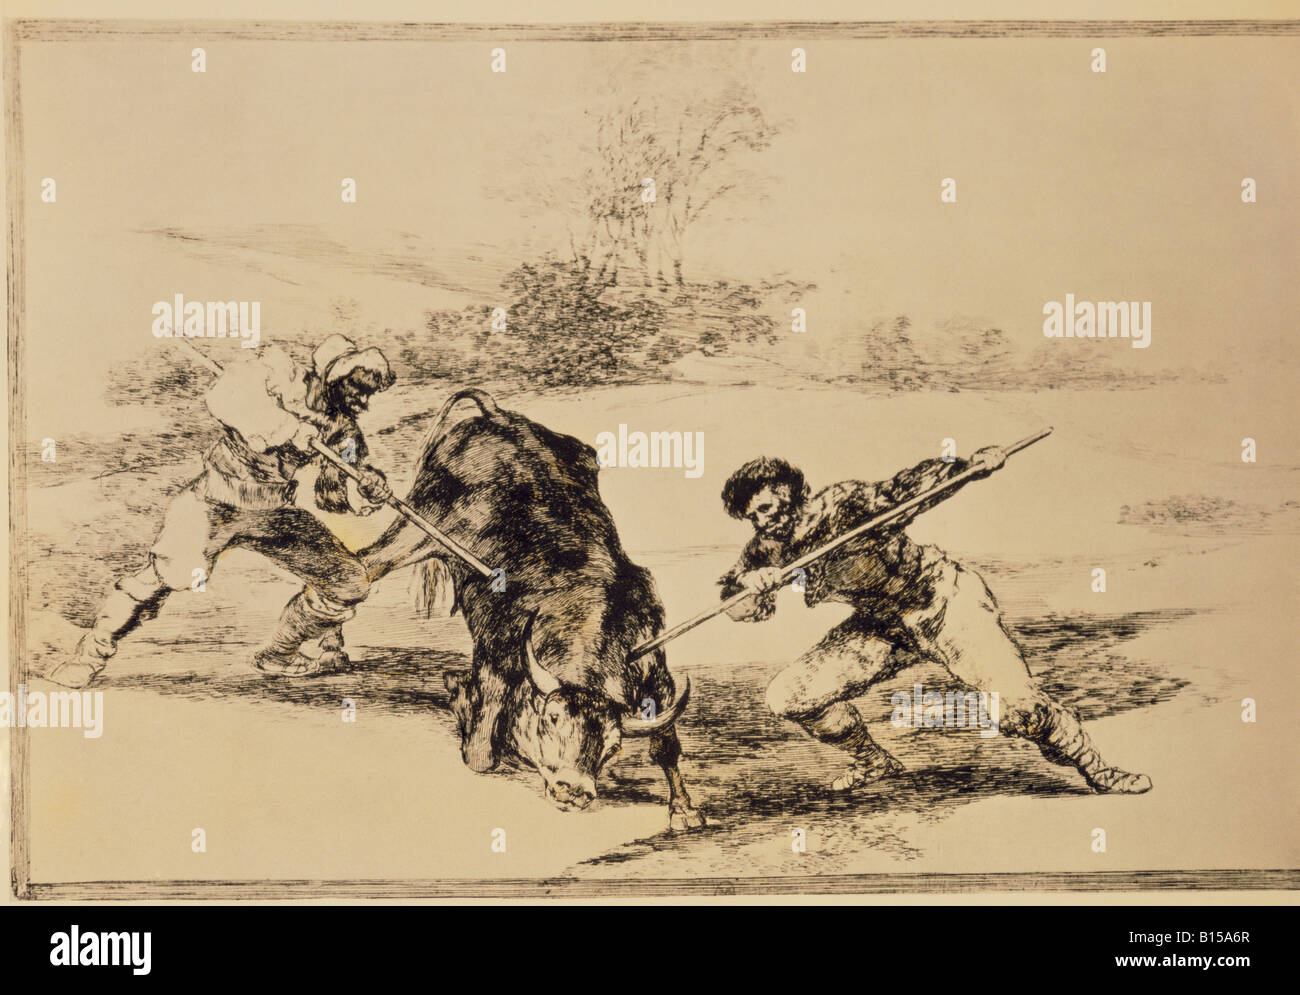 Belle arti, Goya y Lucientes, Francisco de (1746 - 1828), grafico, 'Un altro modo di cacciare a piedi', da 'Tauromachia' (corrida), 1816, collezione privata, artista del diritto d'autore non deve essere cancellata Foto Stock